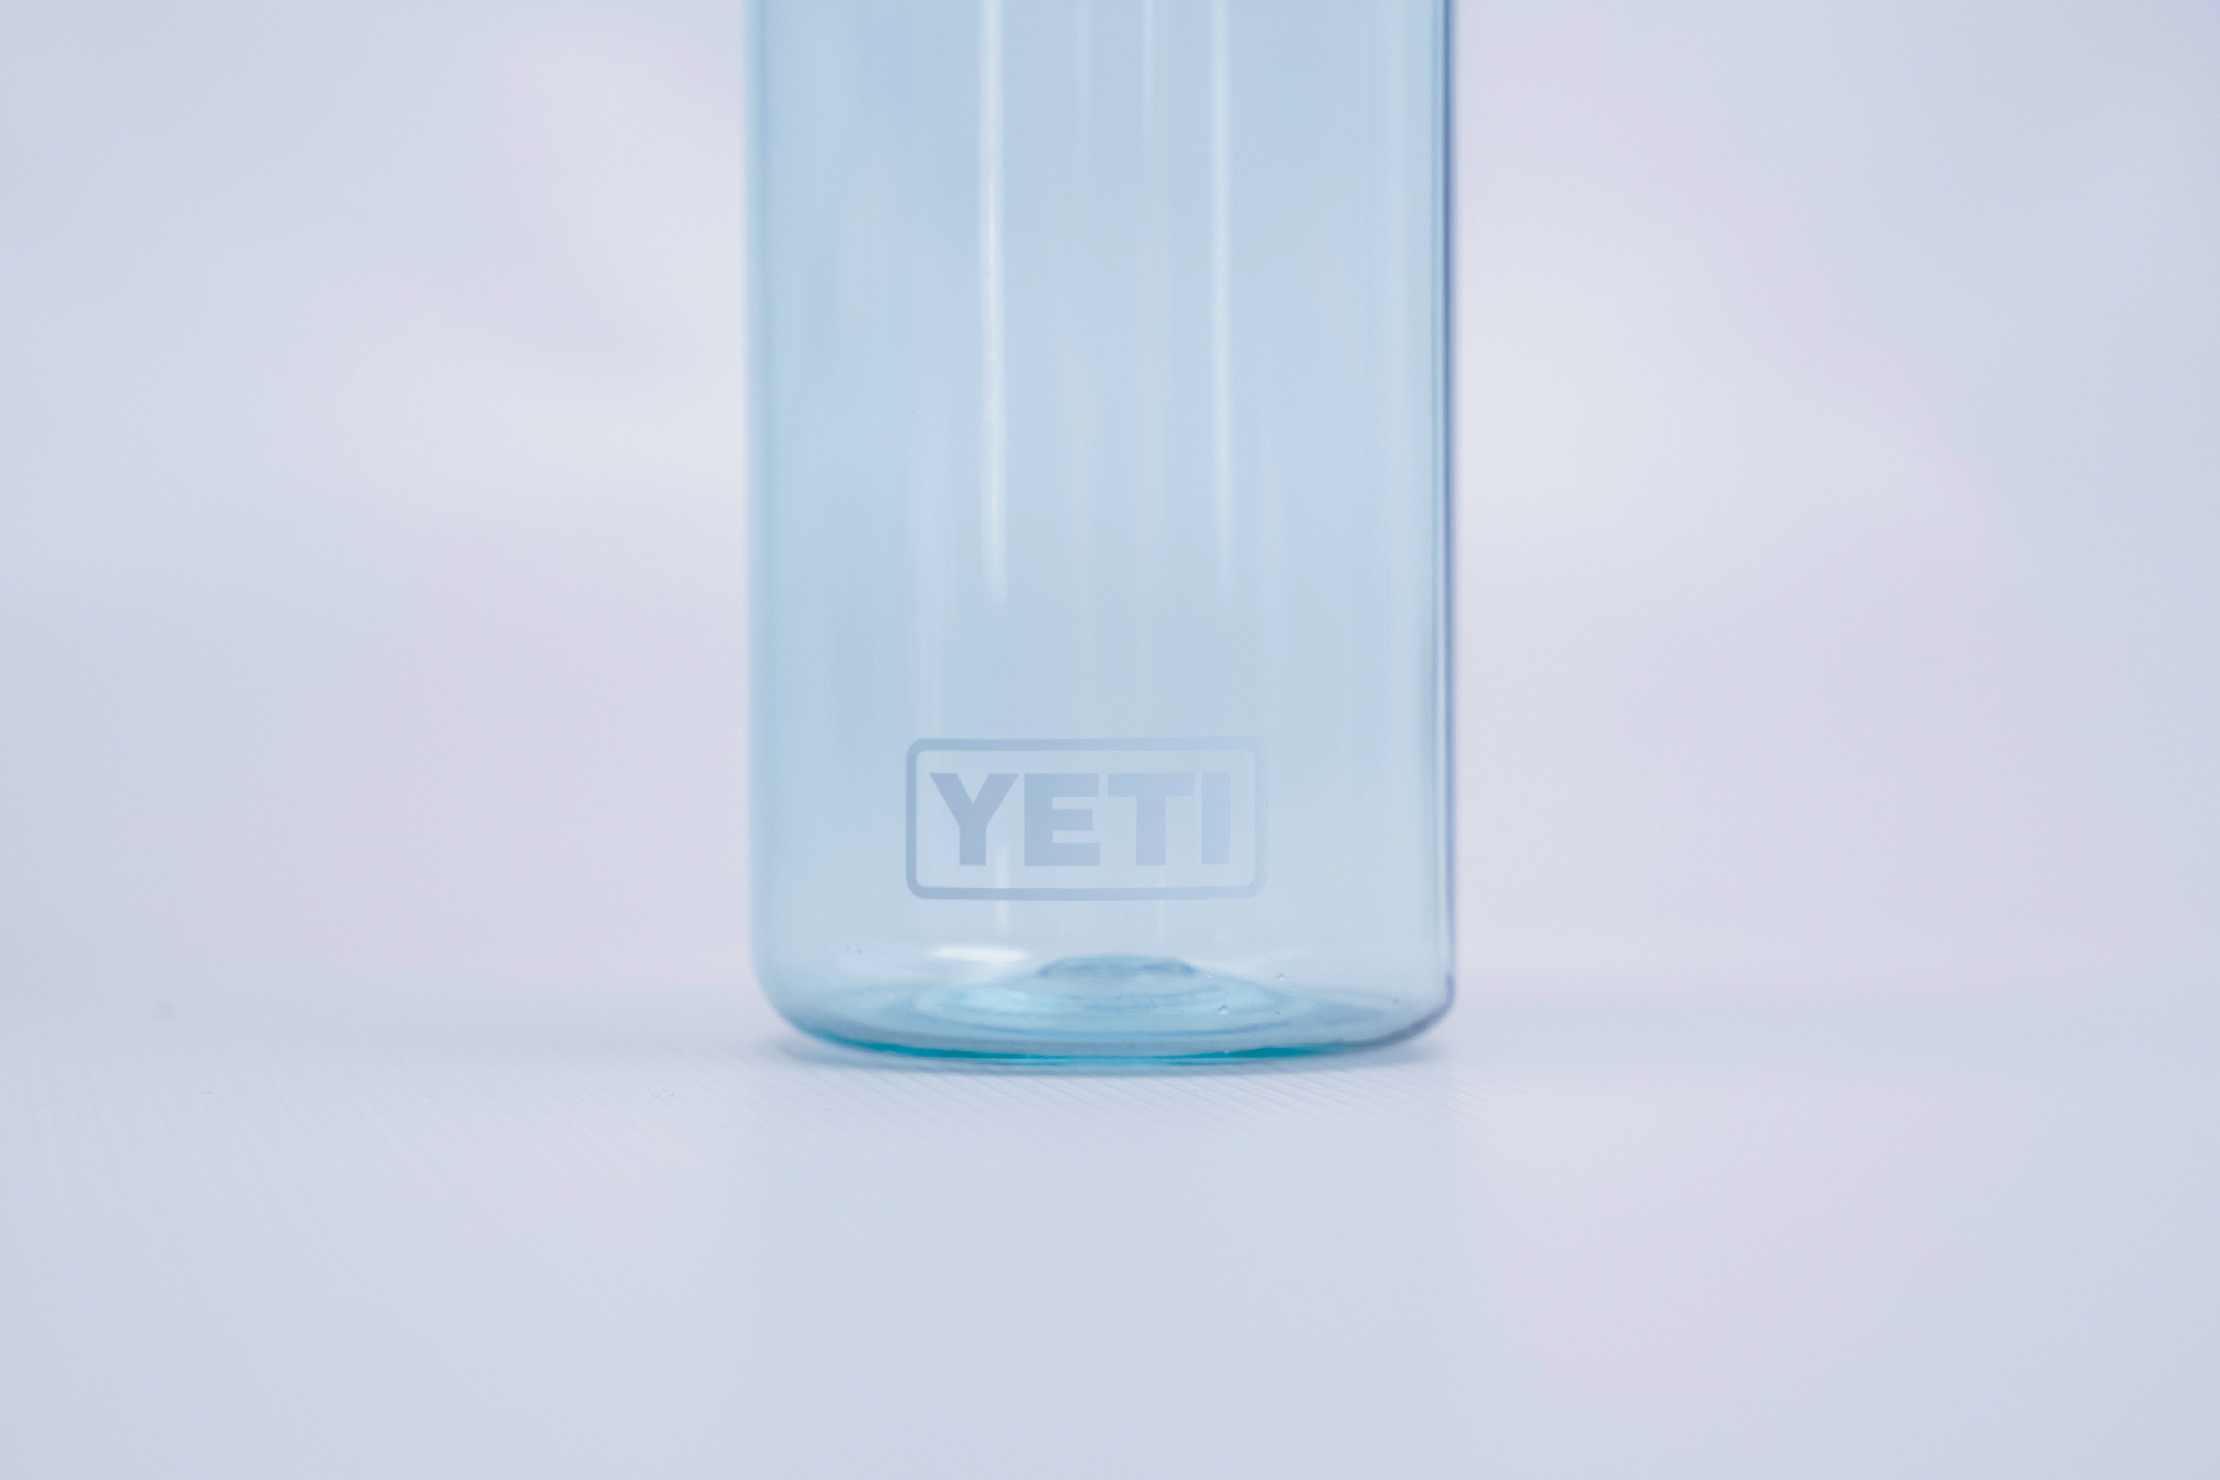 YETI Yonder 20 oz Water Bottle Review